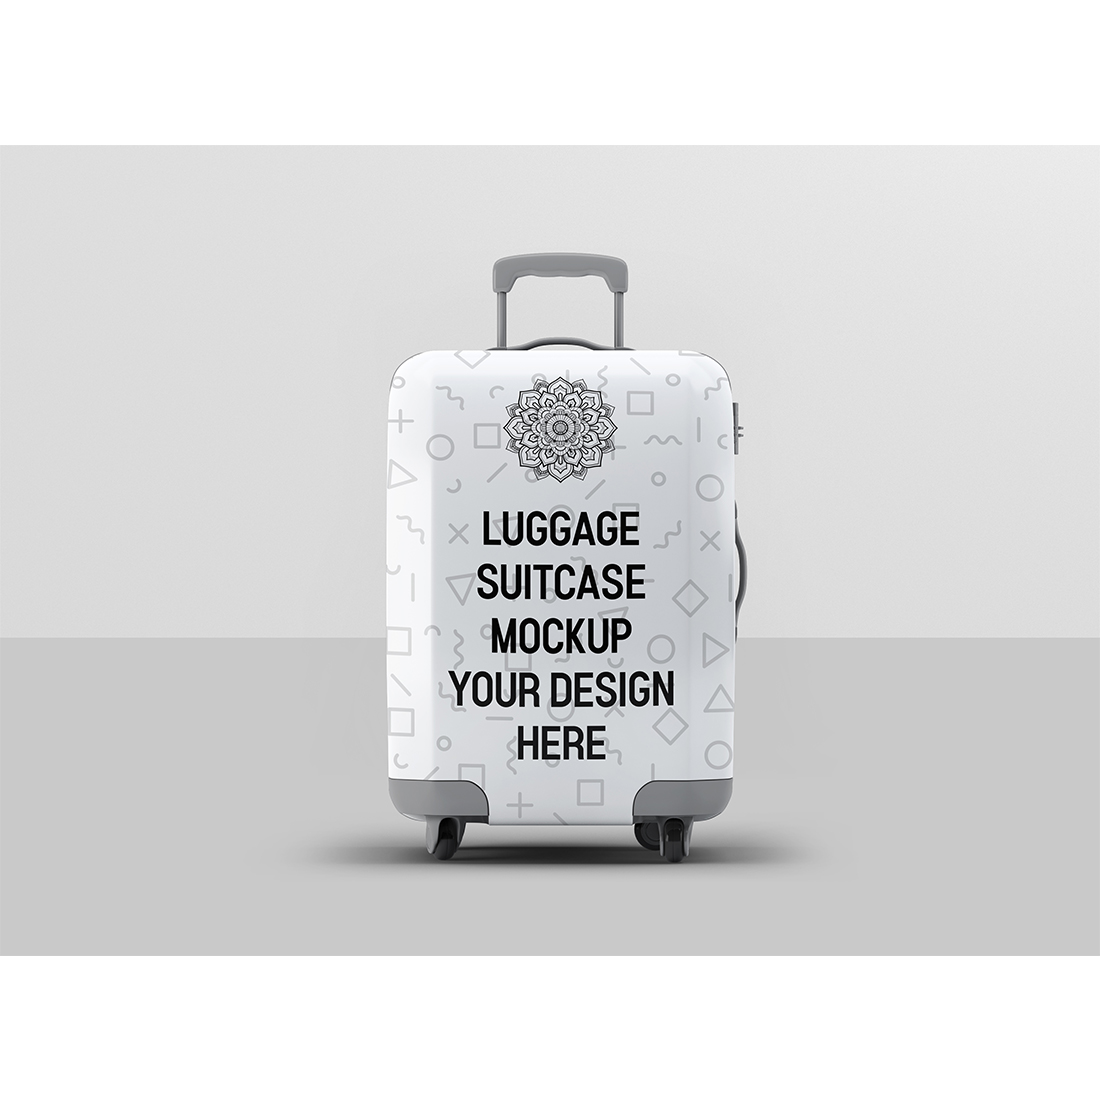 Luggage Suitcase Mockup cover image.